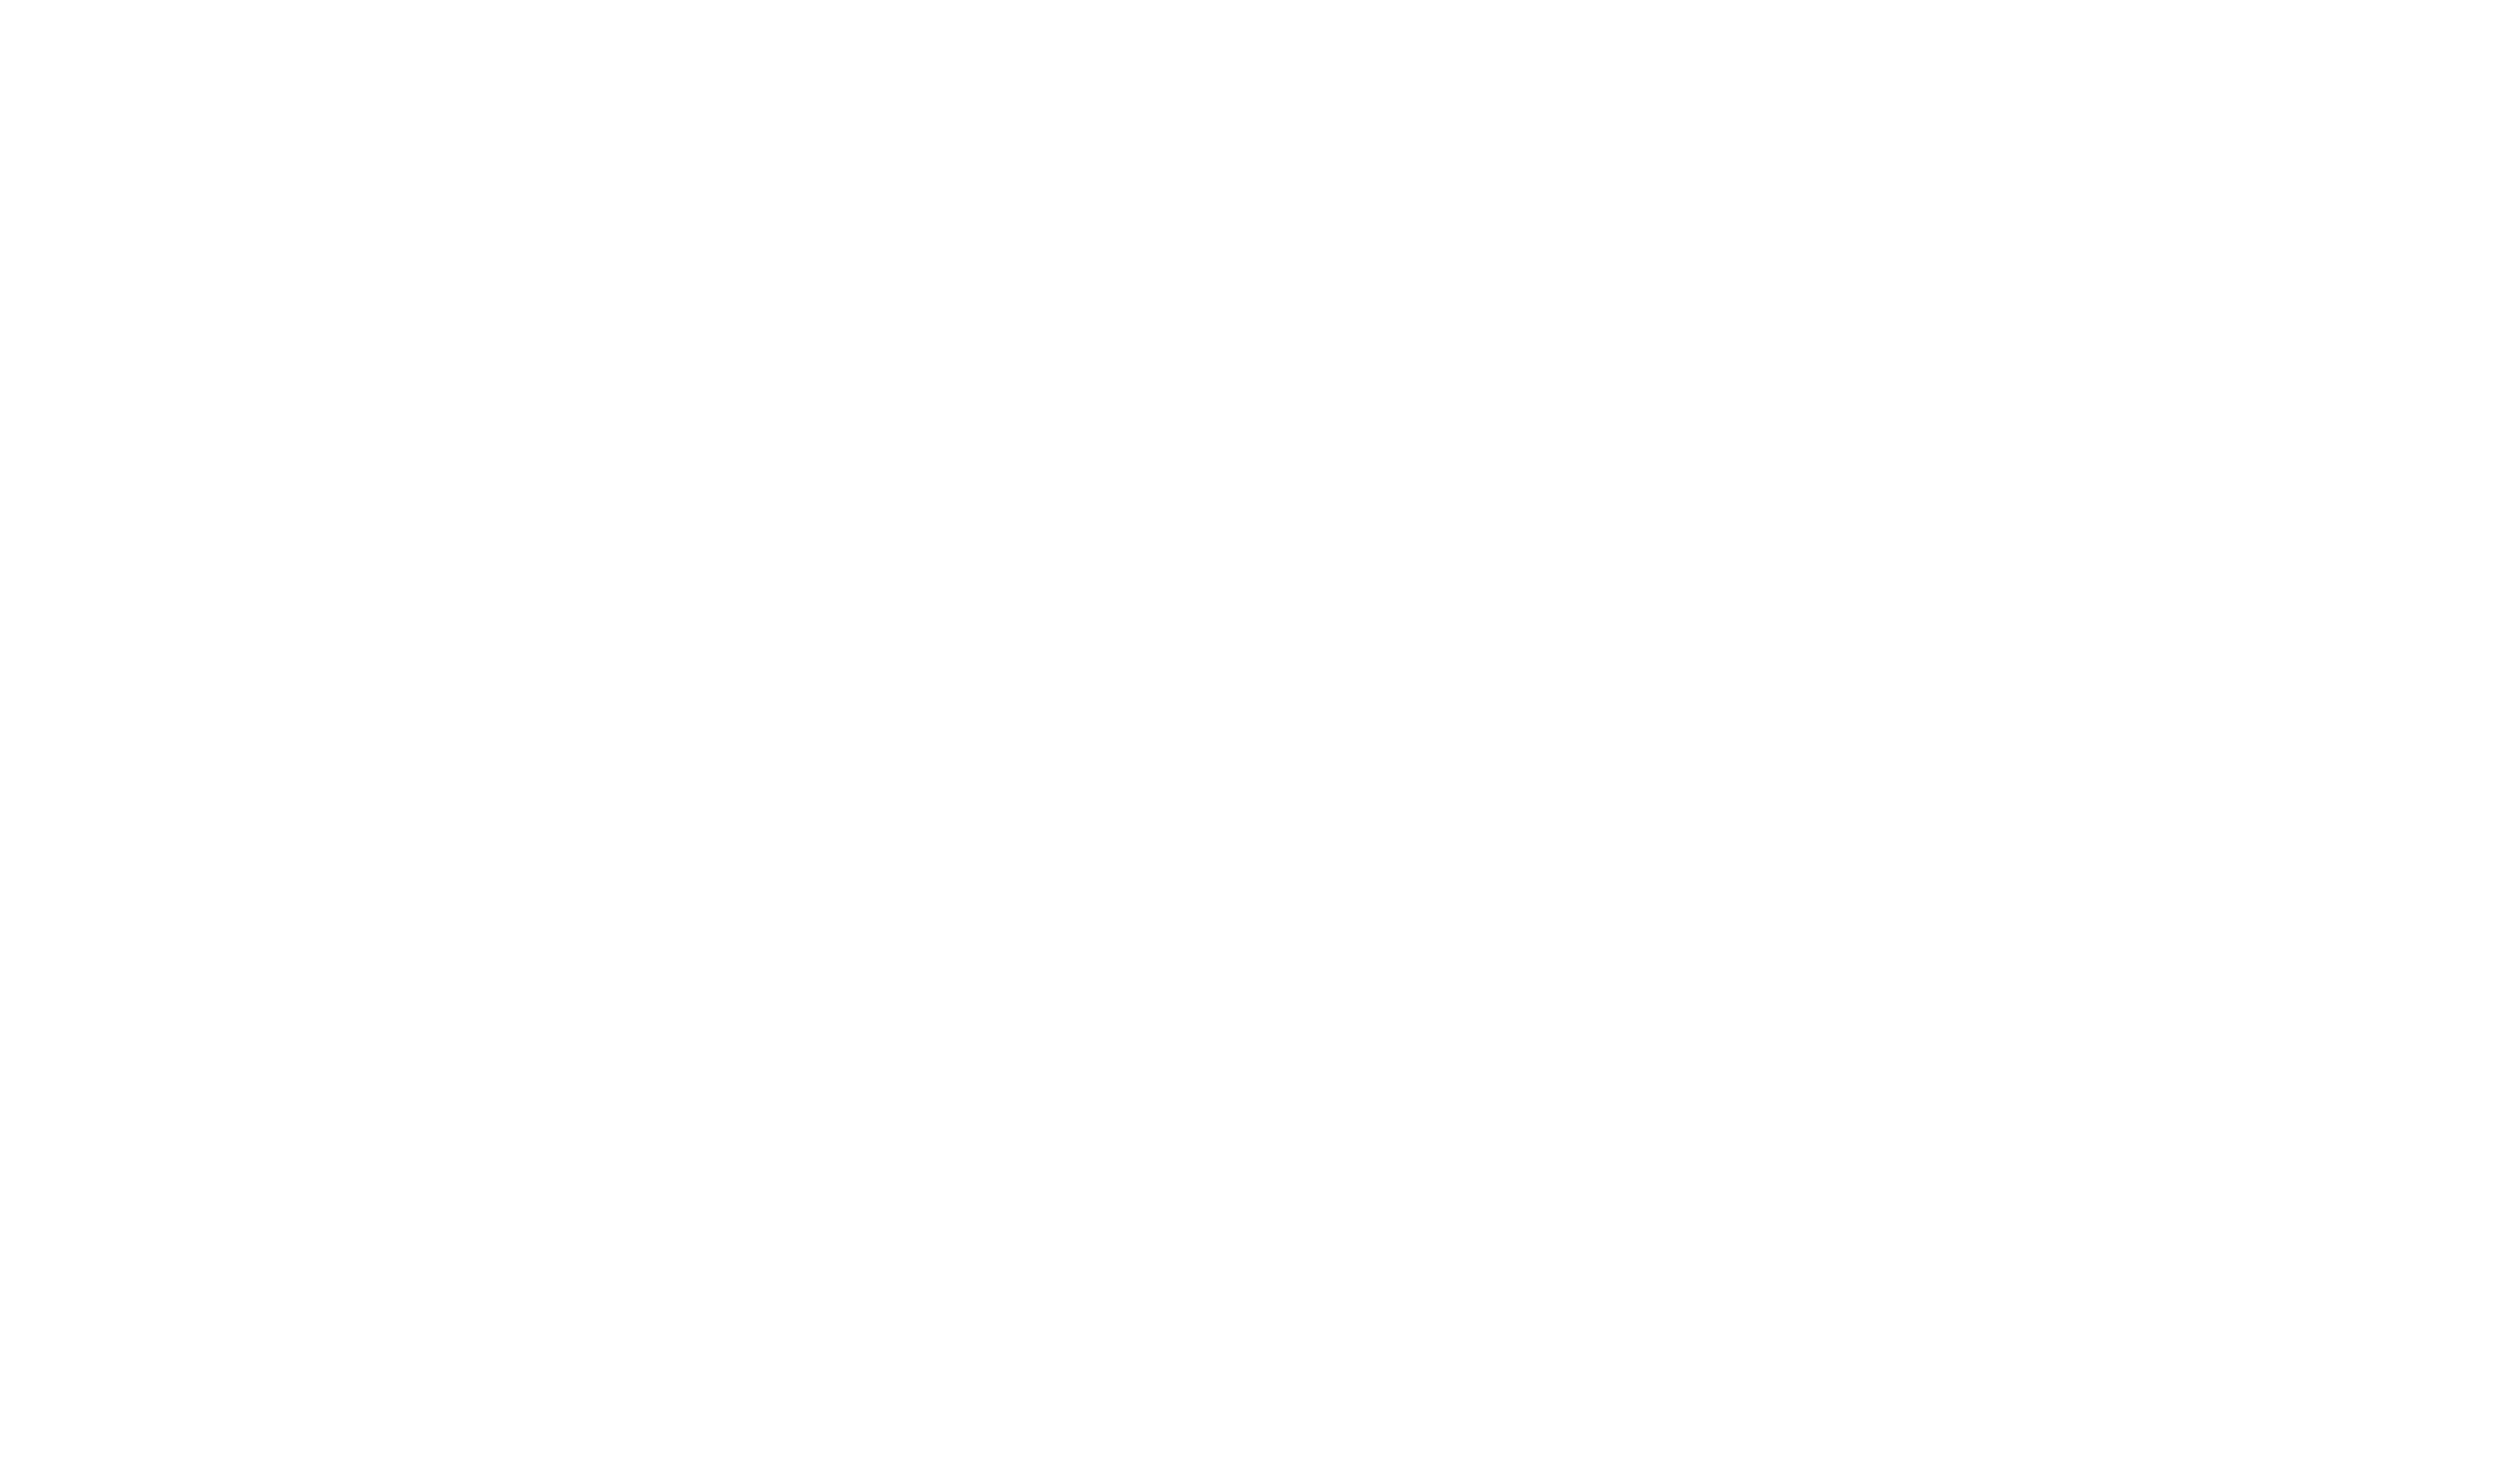 LASSO Montréal